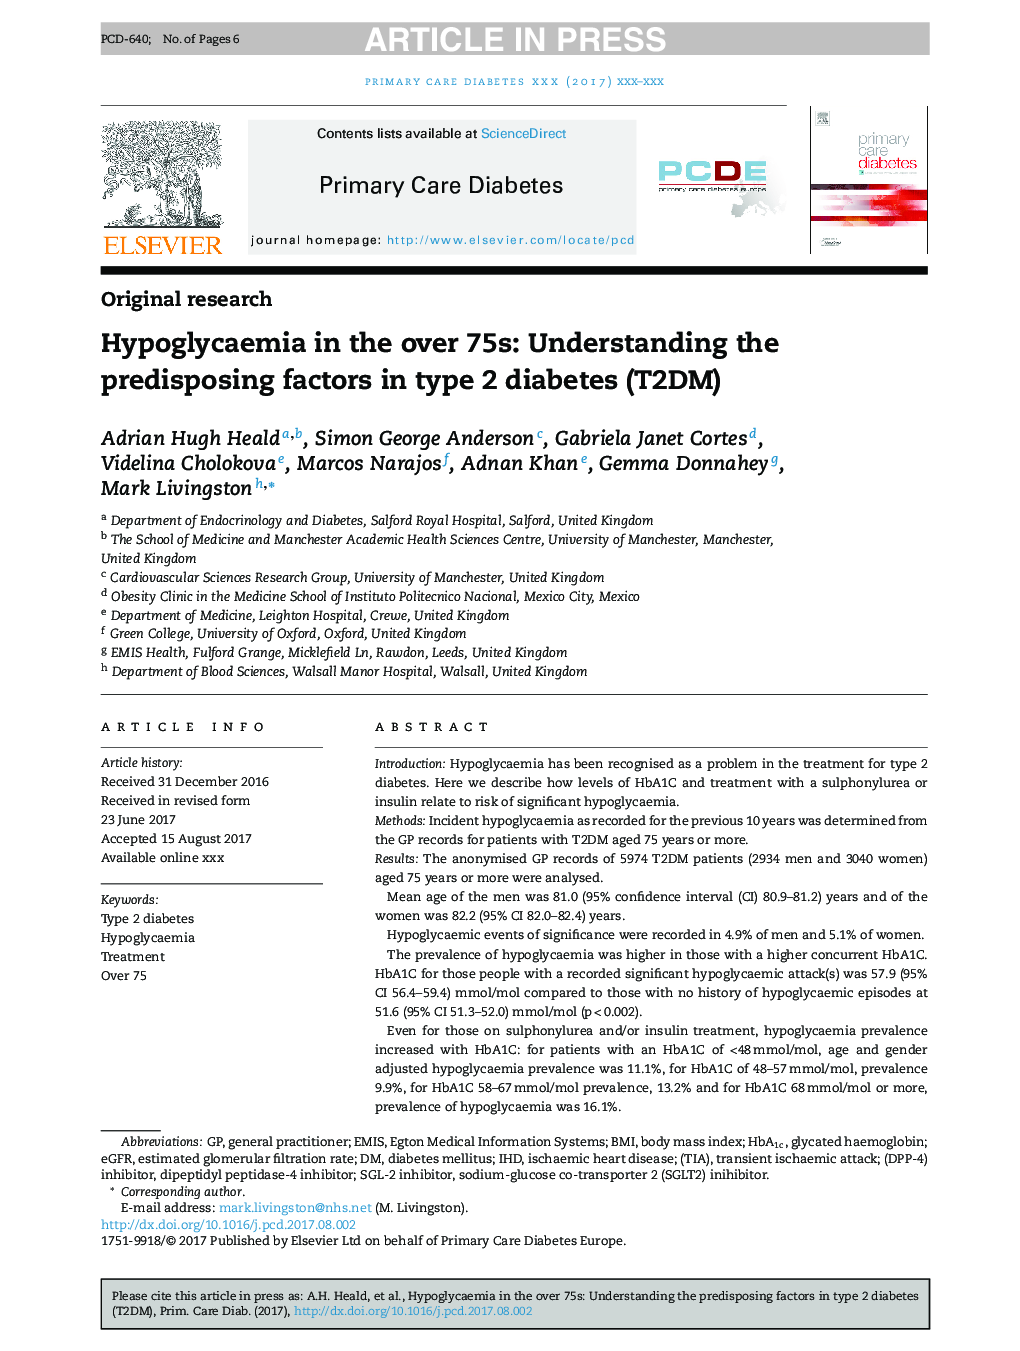 Hypoglycaemia in the over 75s: Understanding the predisposing factors in type 2 diabetes (T2DM)